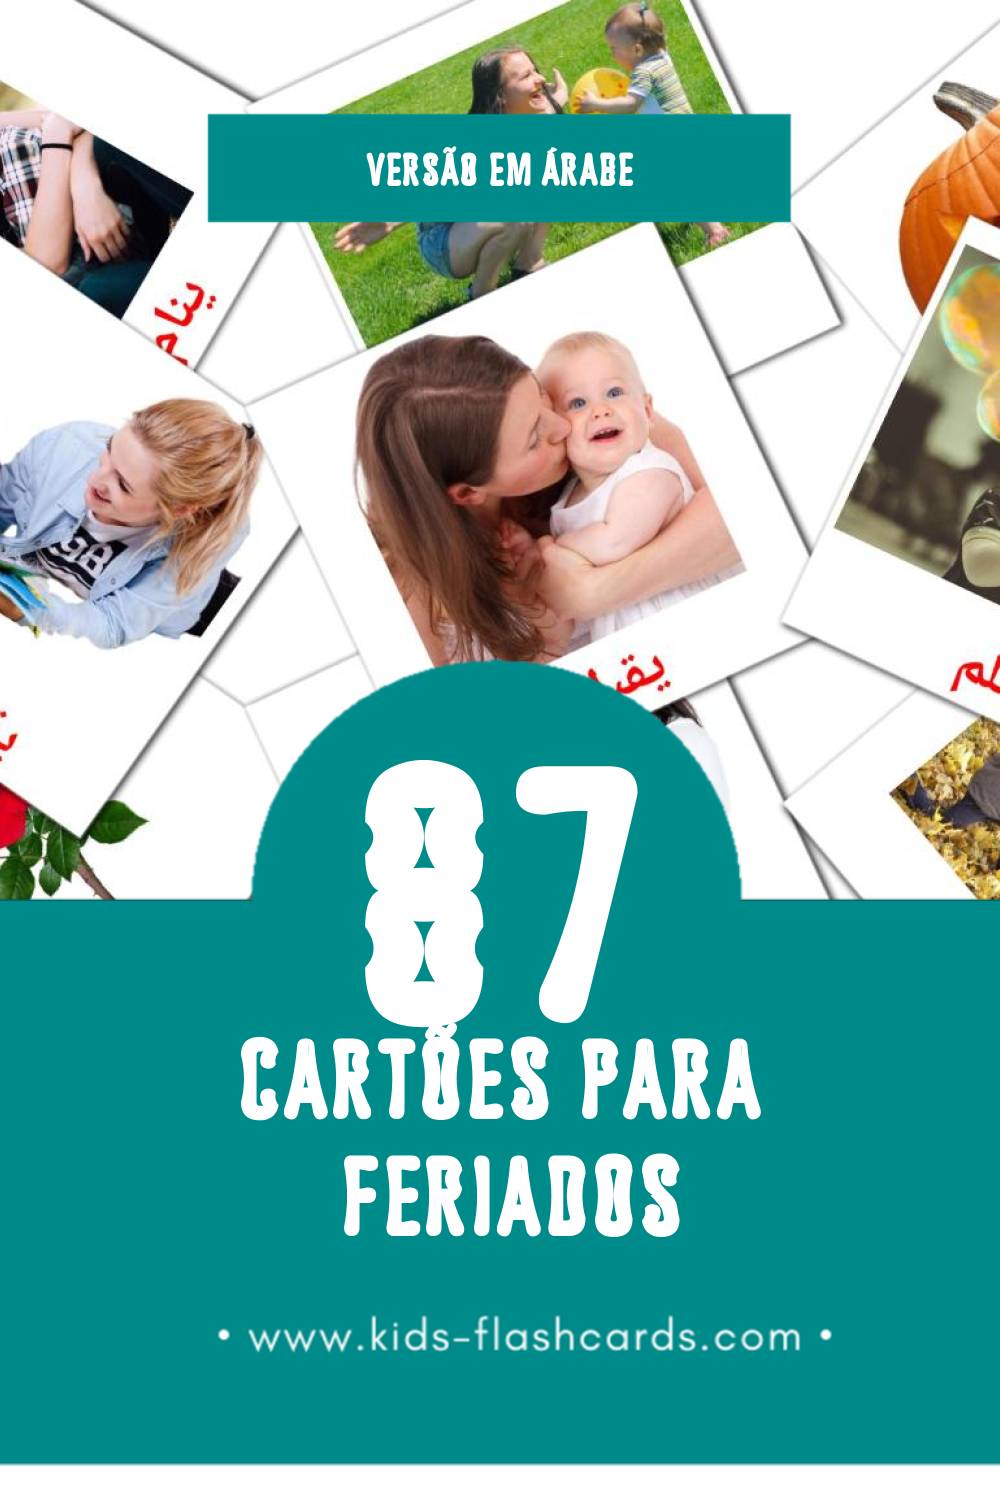 Flashcards de العطلة Visuais para Toddlers (87 cartões em Árabe)